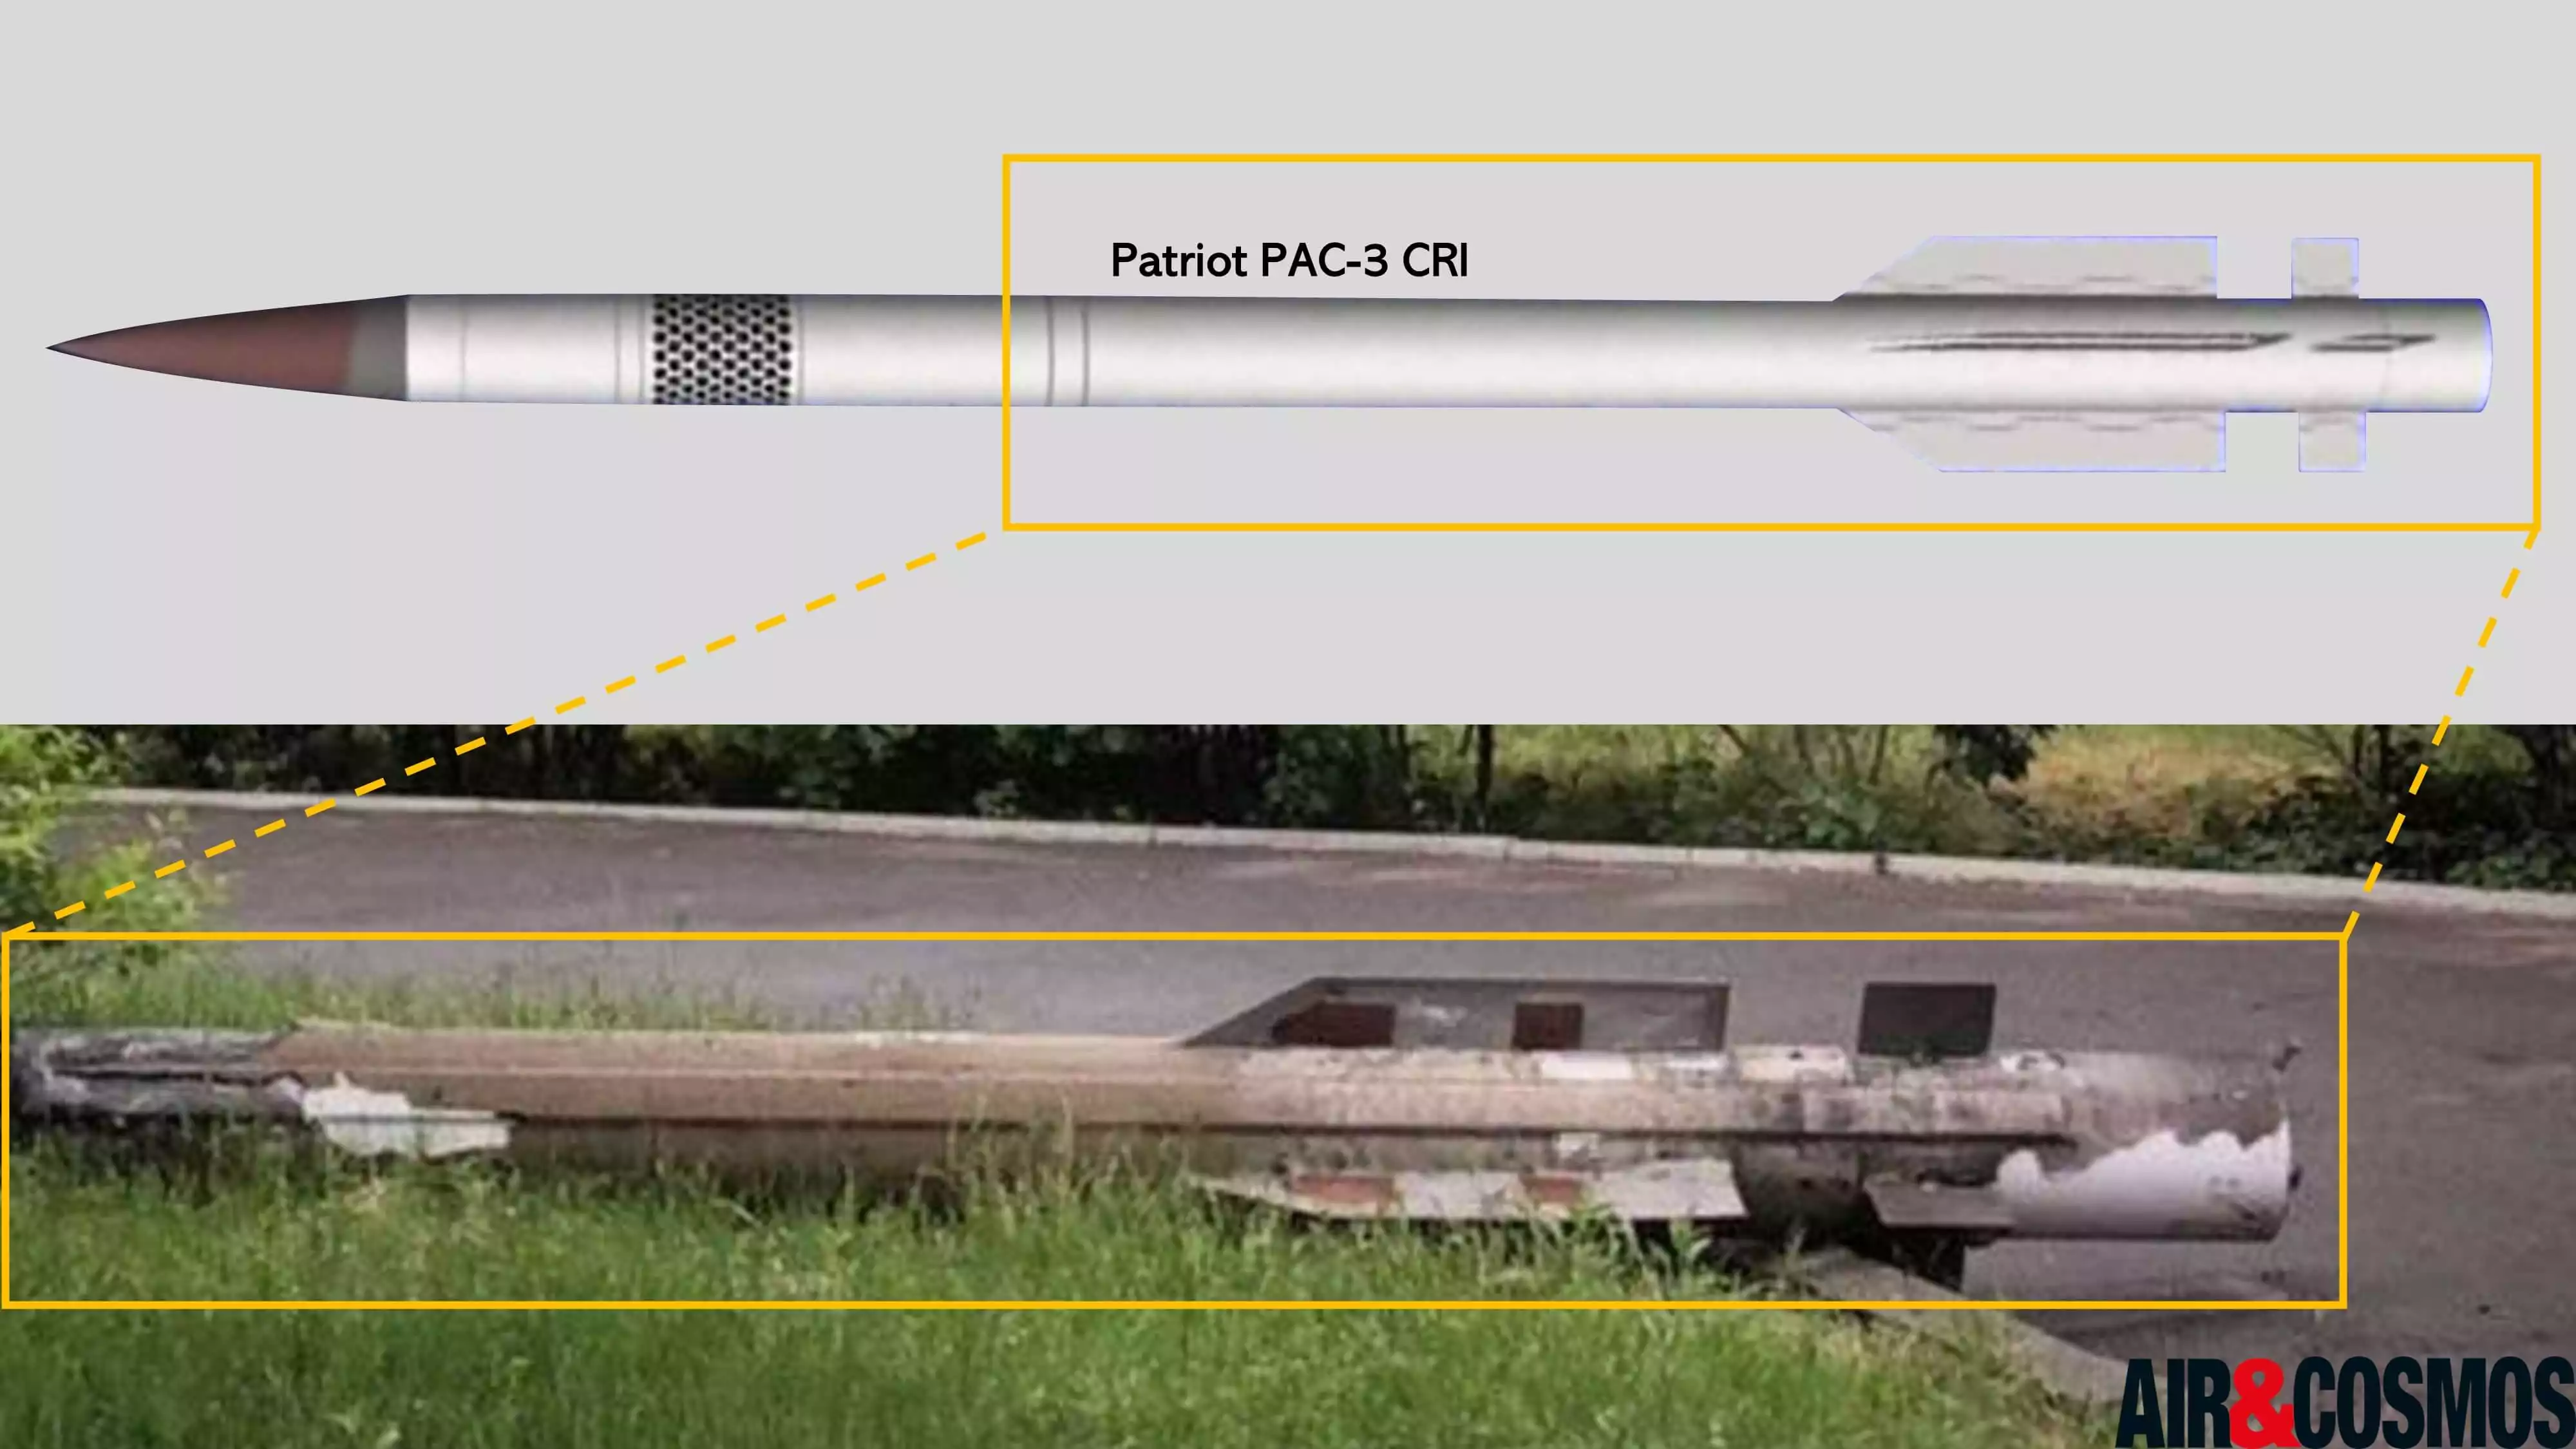 Comparaison entre un missile Patriot PAC-3 CRI retrouvé à Kiev et un missile Patriot PAC-3 CRI utilisé dans une vidéo de Lockheed Martin.